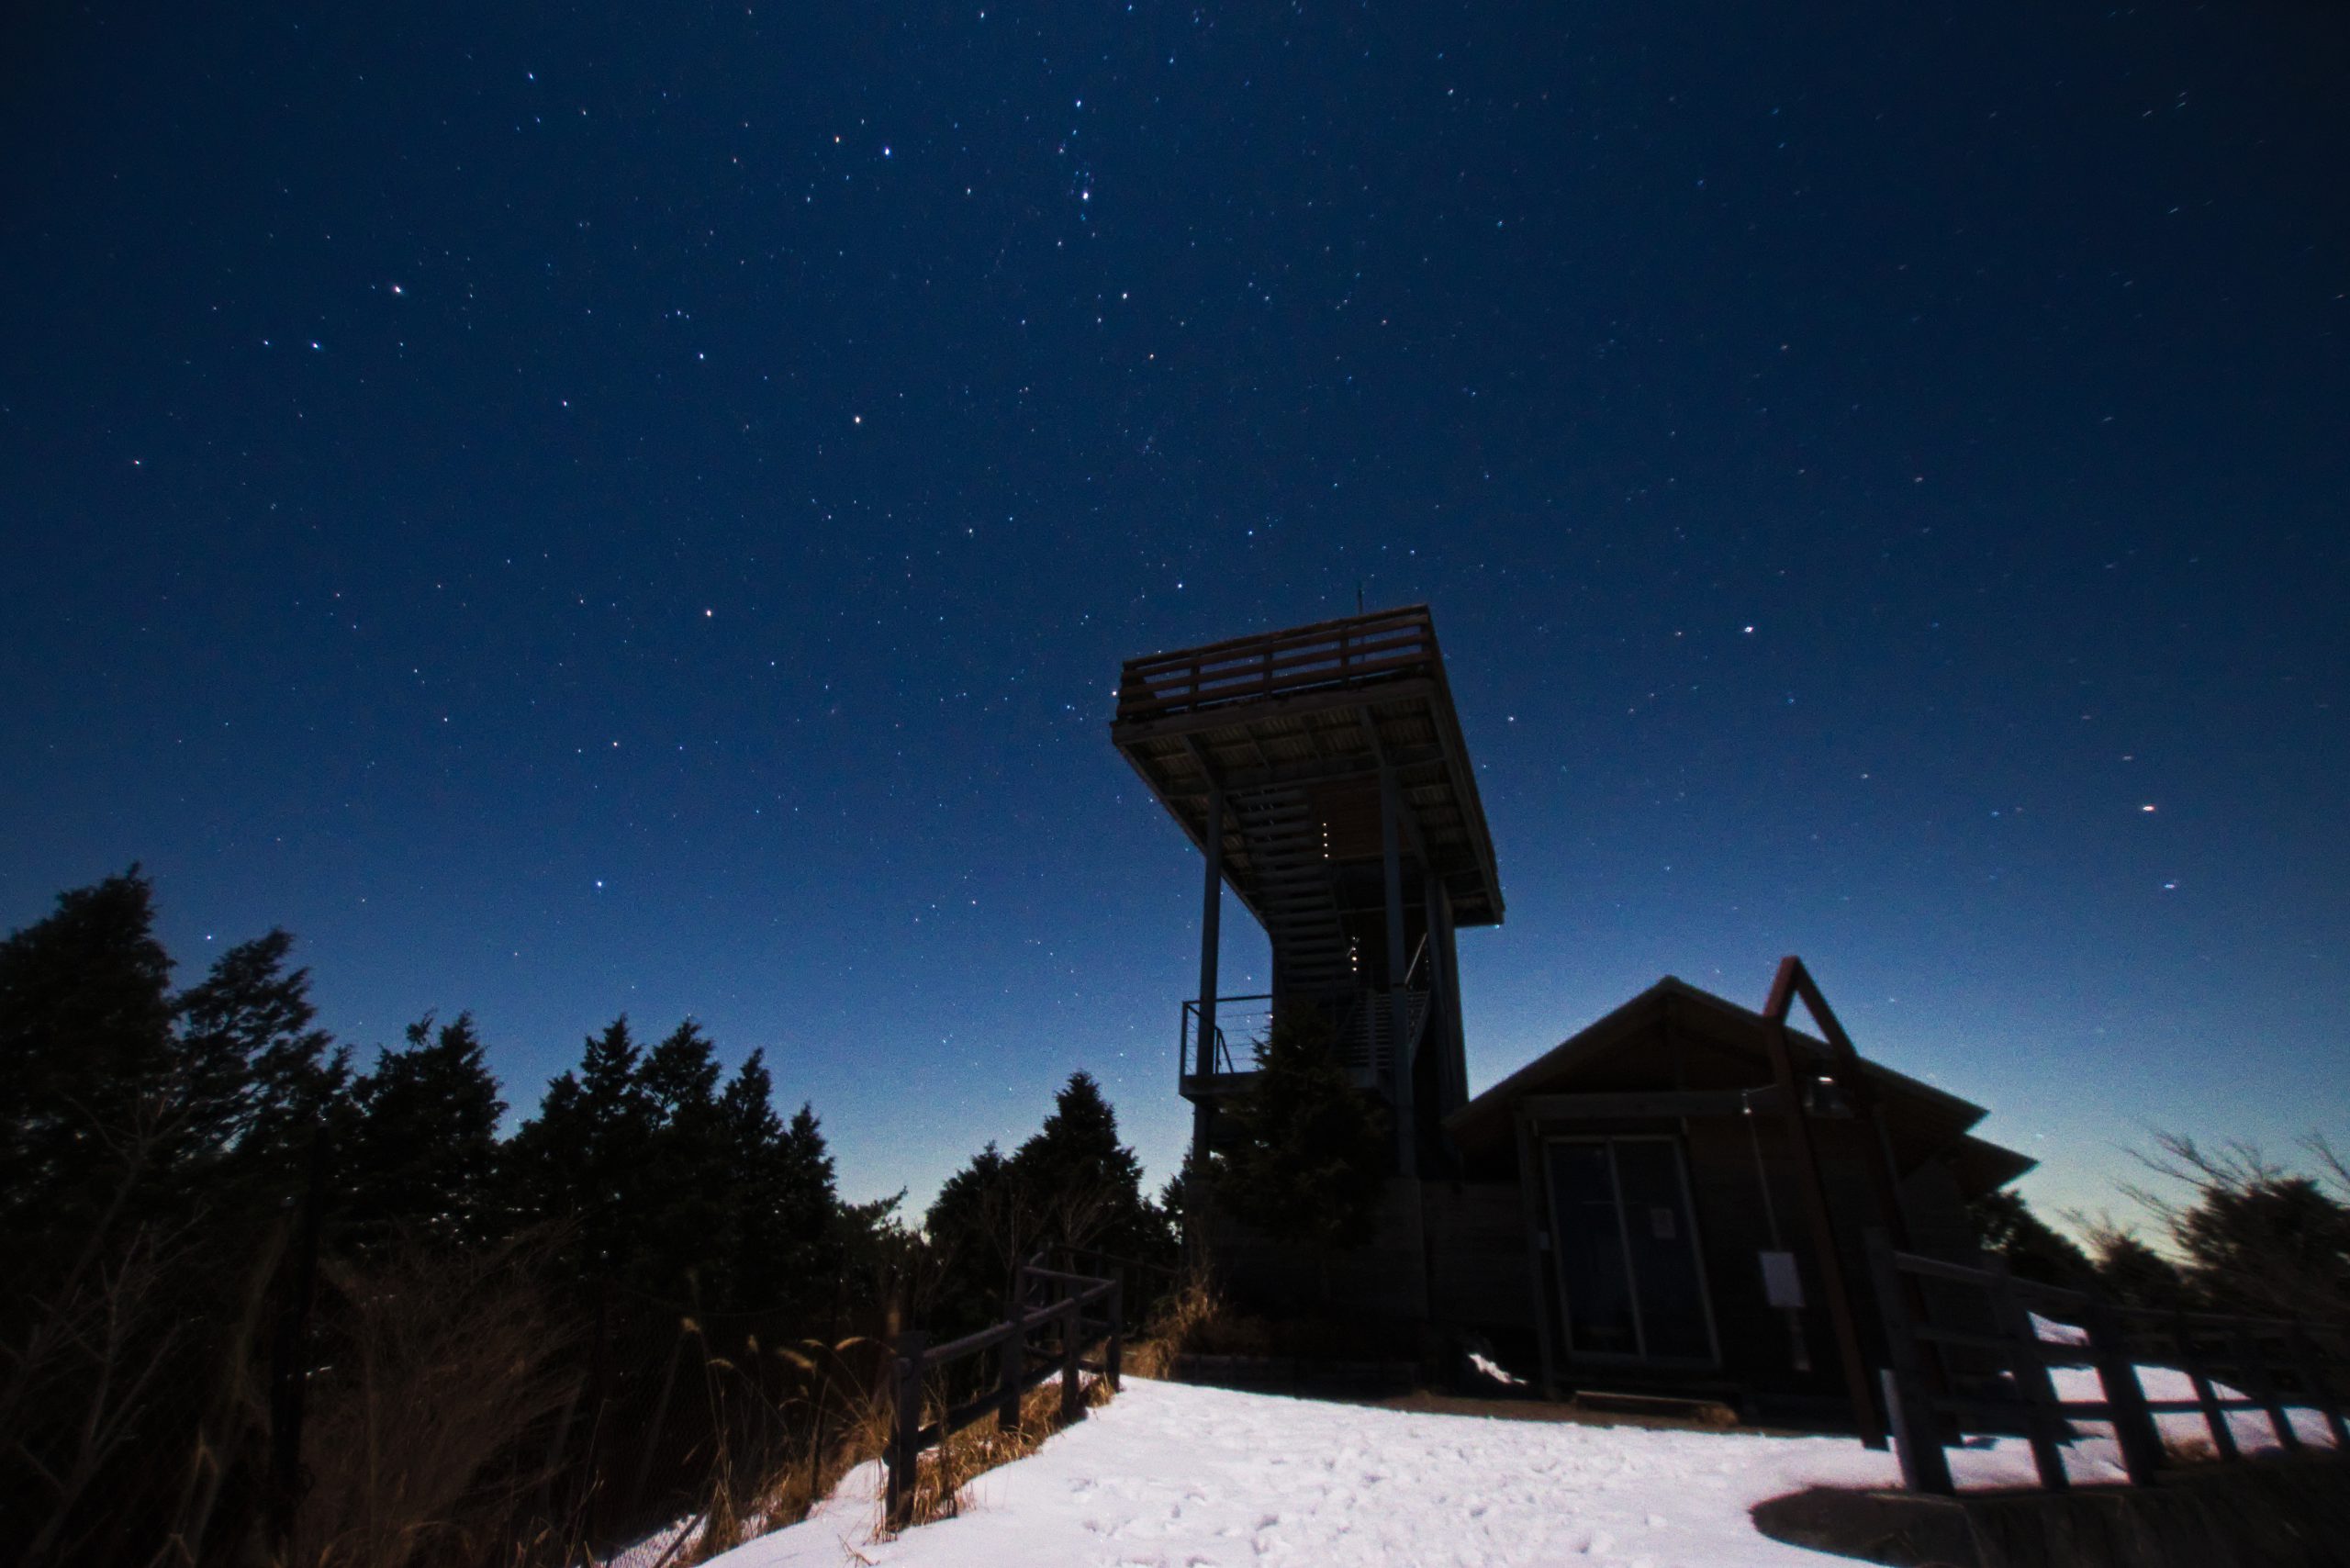 雪の鶴姫公園展望台と北の星空